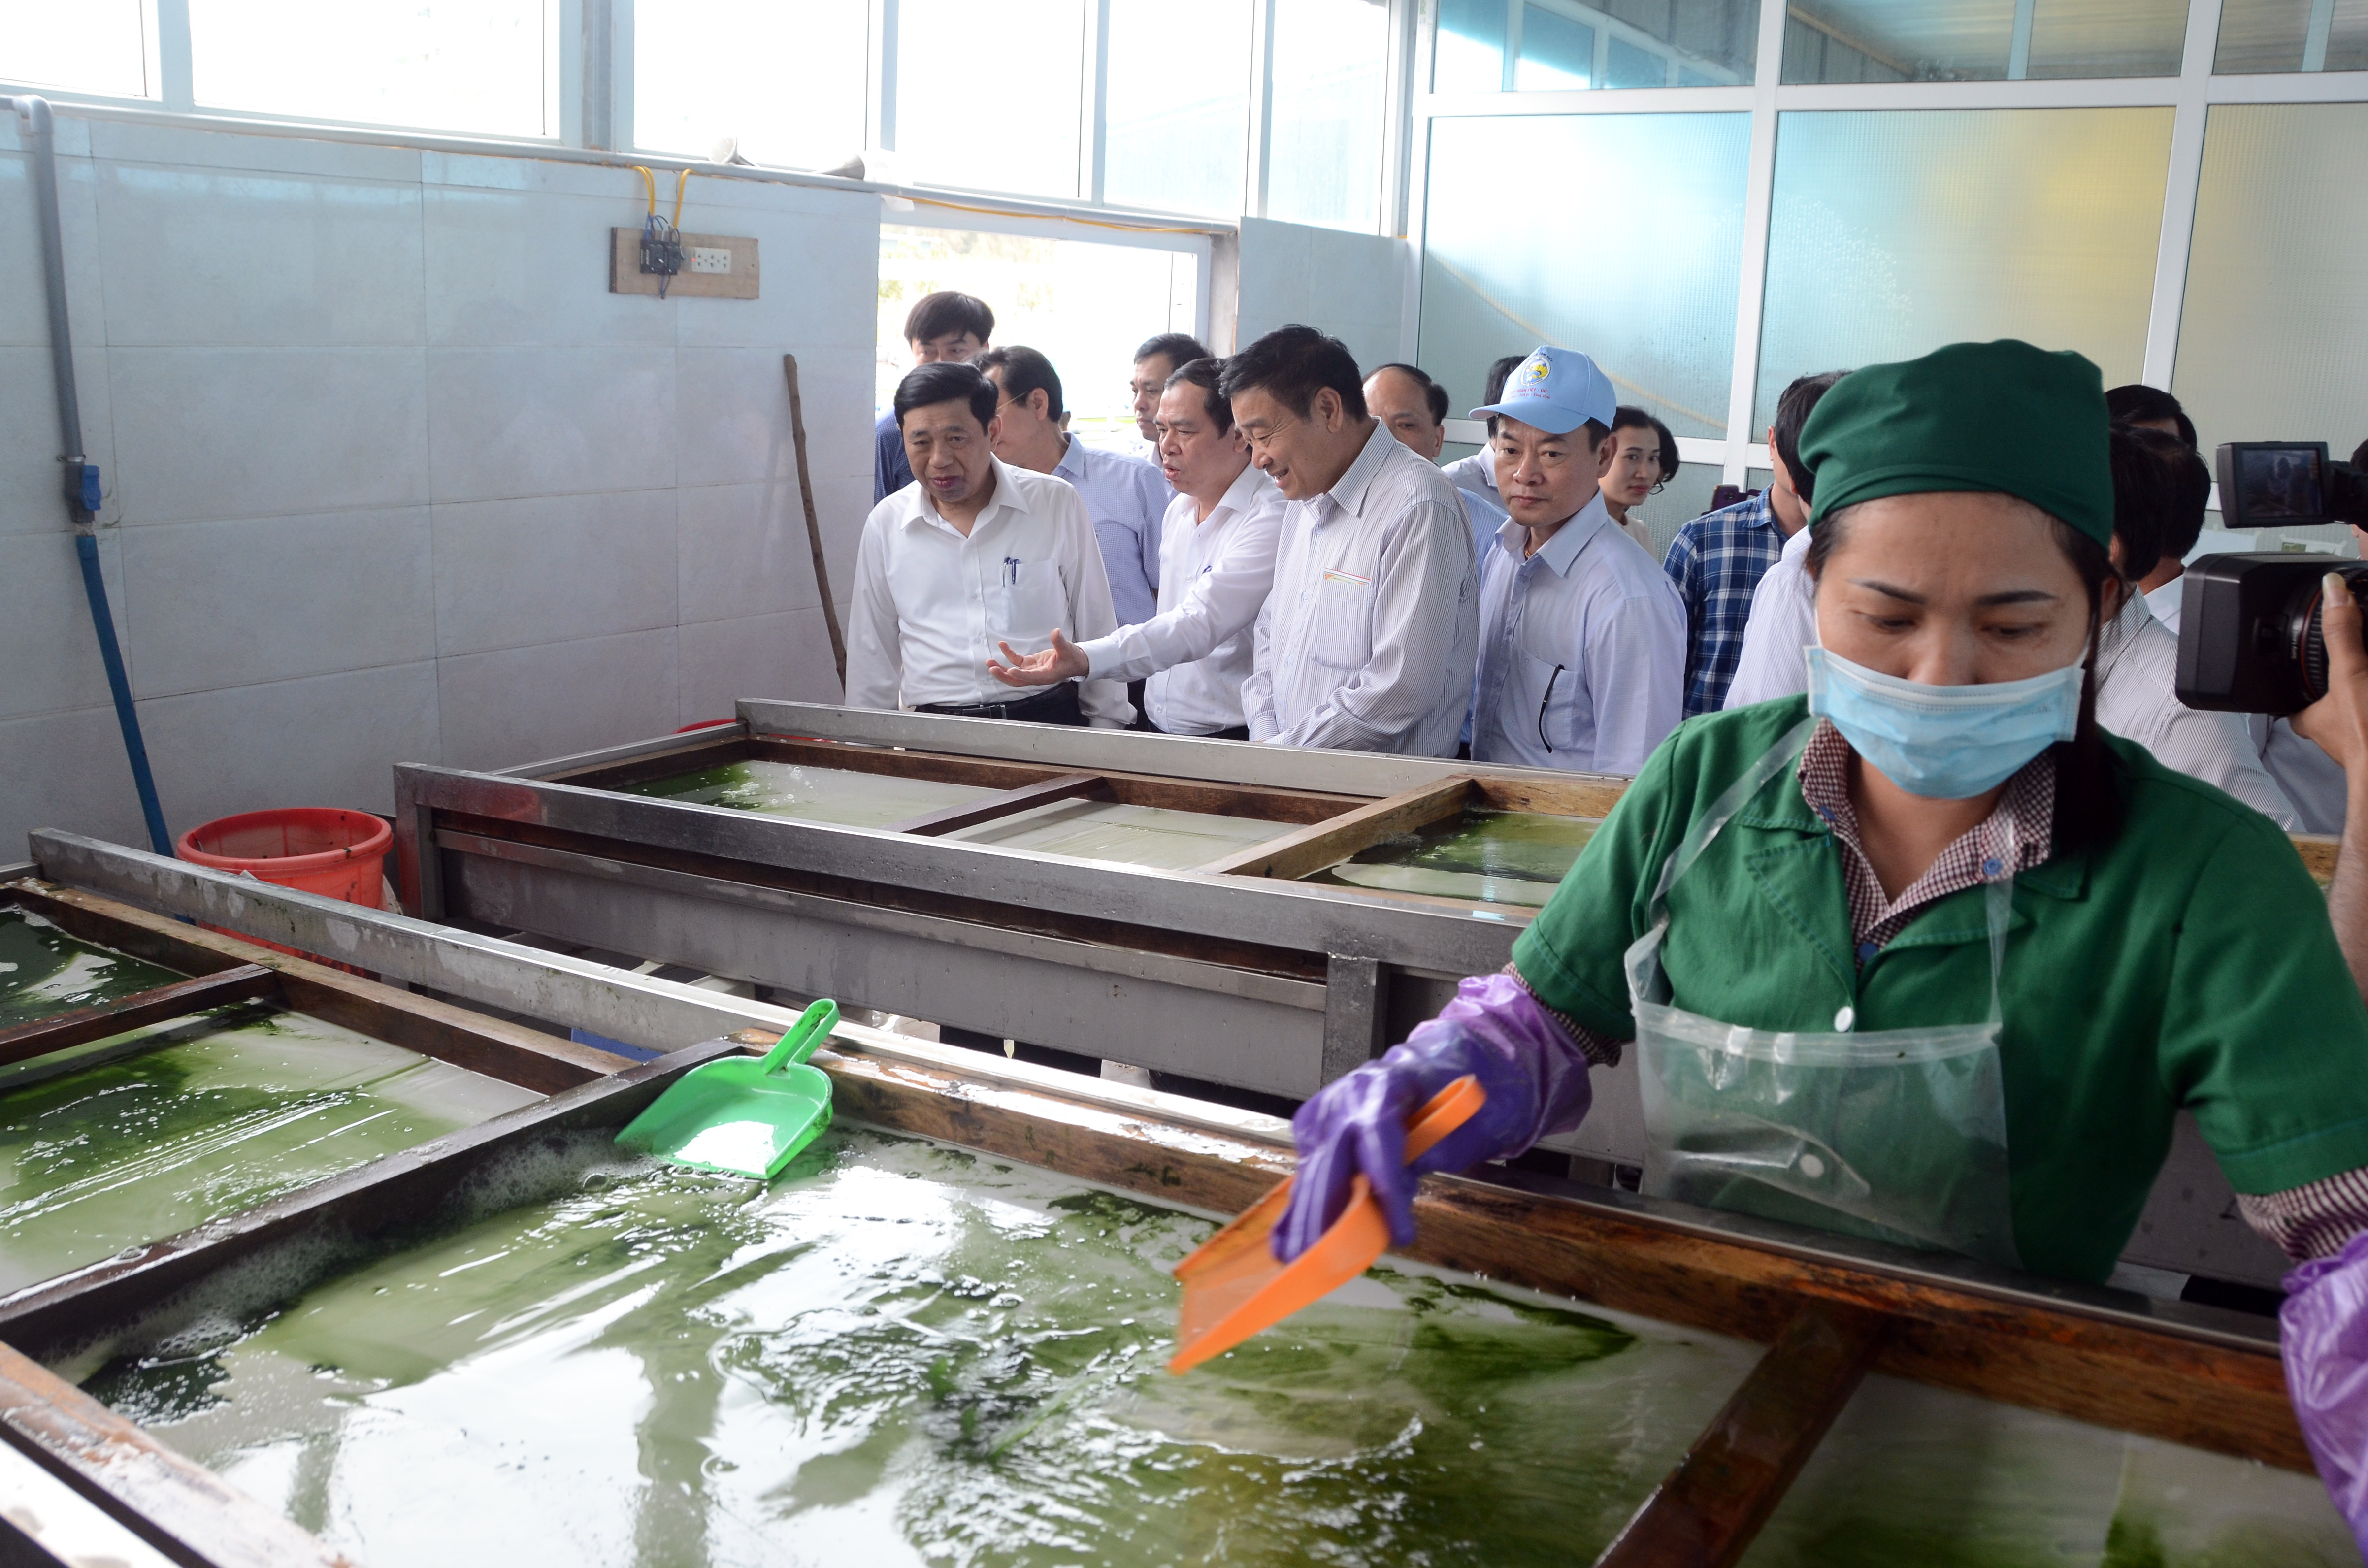 Công ty này được sự hỗ trợ của Viện công nghệ sinh học (Viện hàn làm khoa học Việt Nam) trong công nghệ sản xuất các loại dược phẩm chất lượng cao như tảo xoắn, đông trùng hạ thảo.